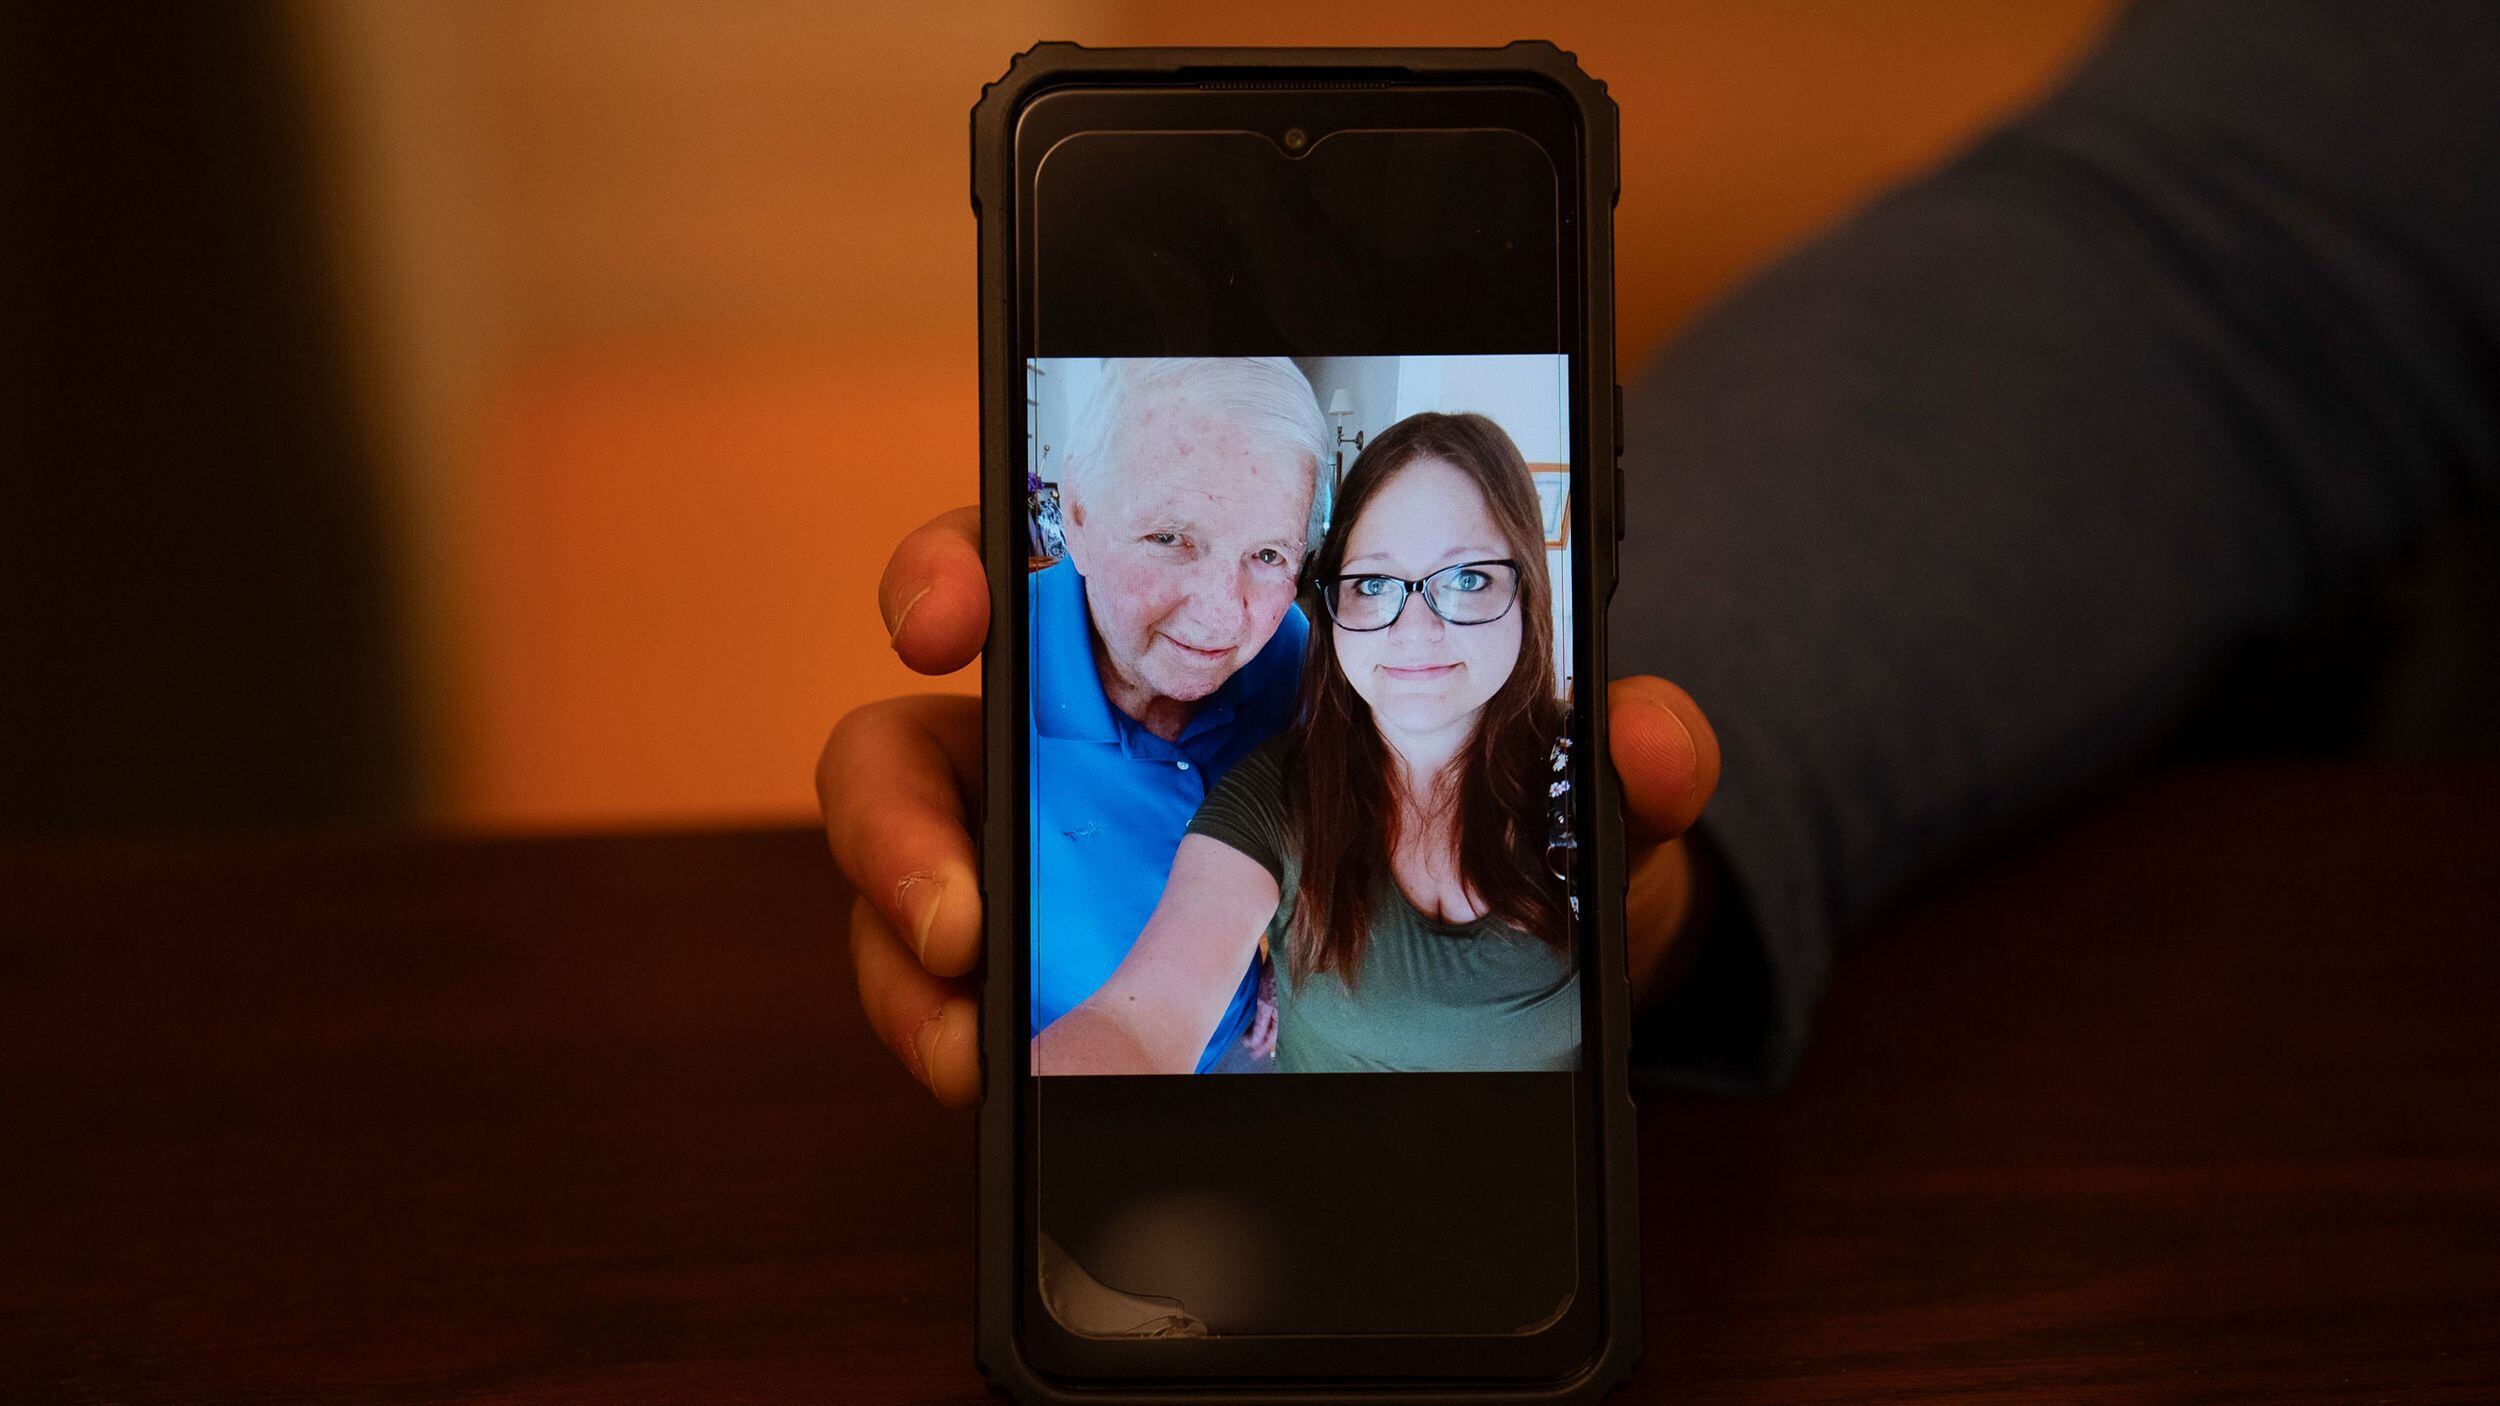 Janine Pierson tuvo un cara a cara con su padre biológico, el Burton Caldwell. Antes de despedirse posaron para una selfie. (Laura Oliverio/CNN)